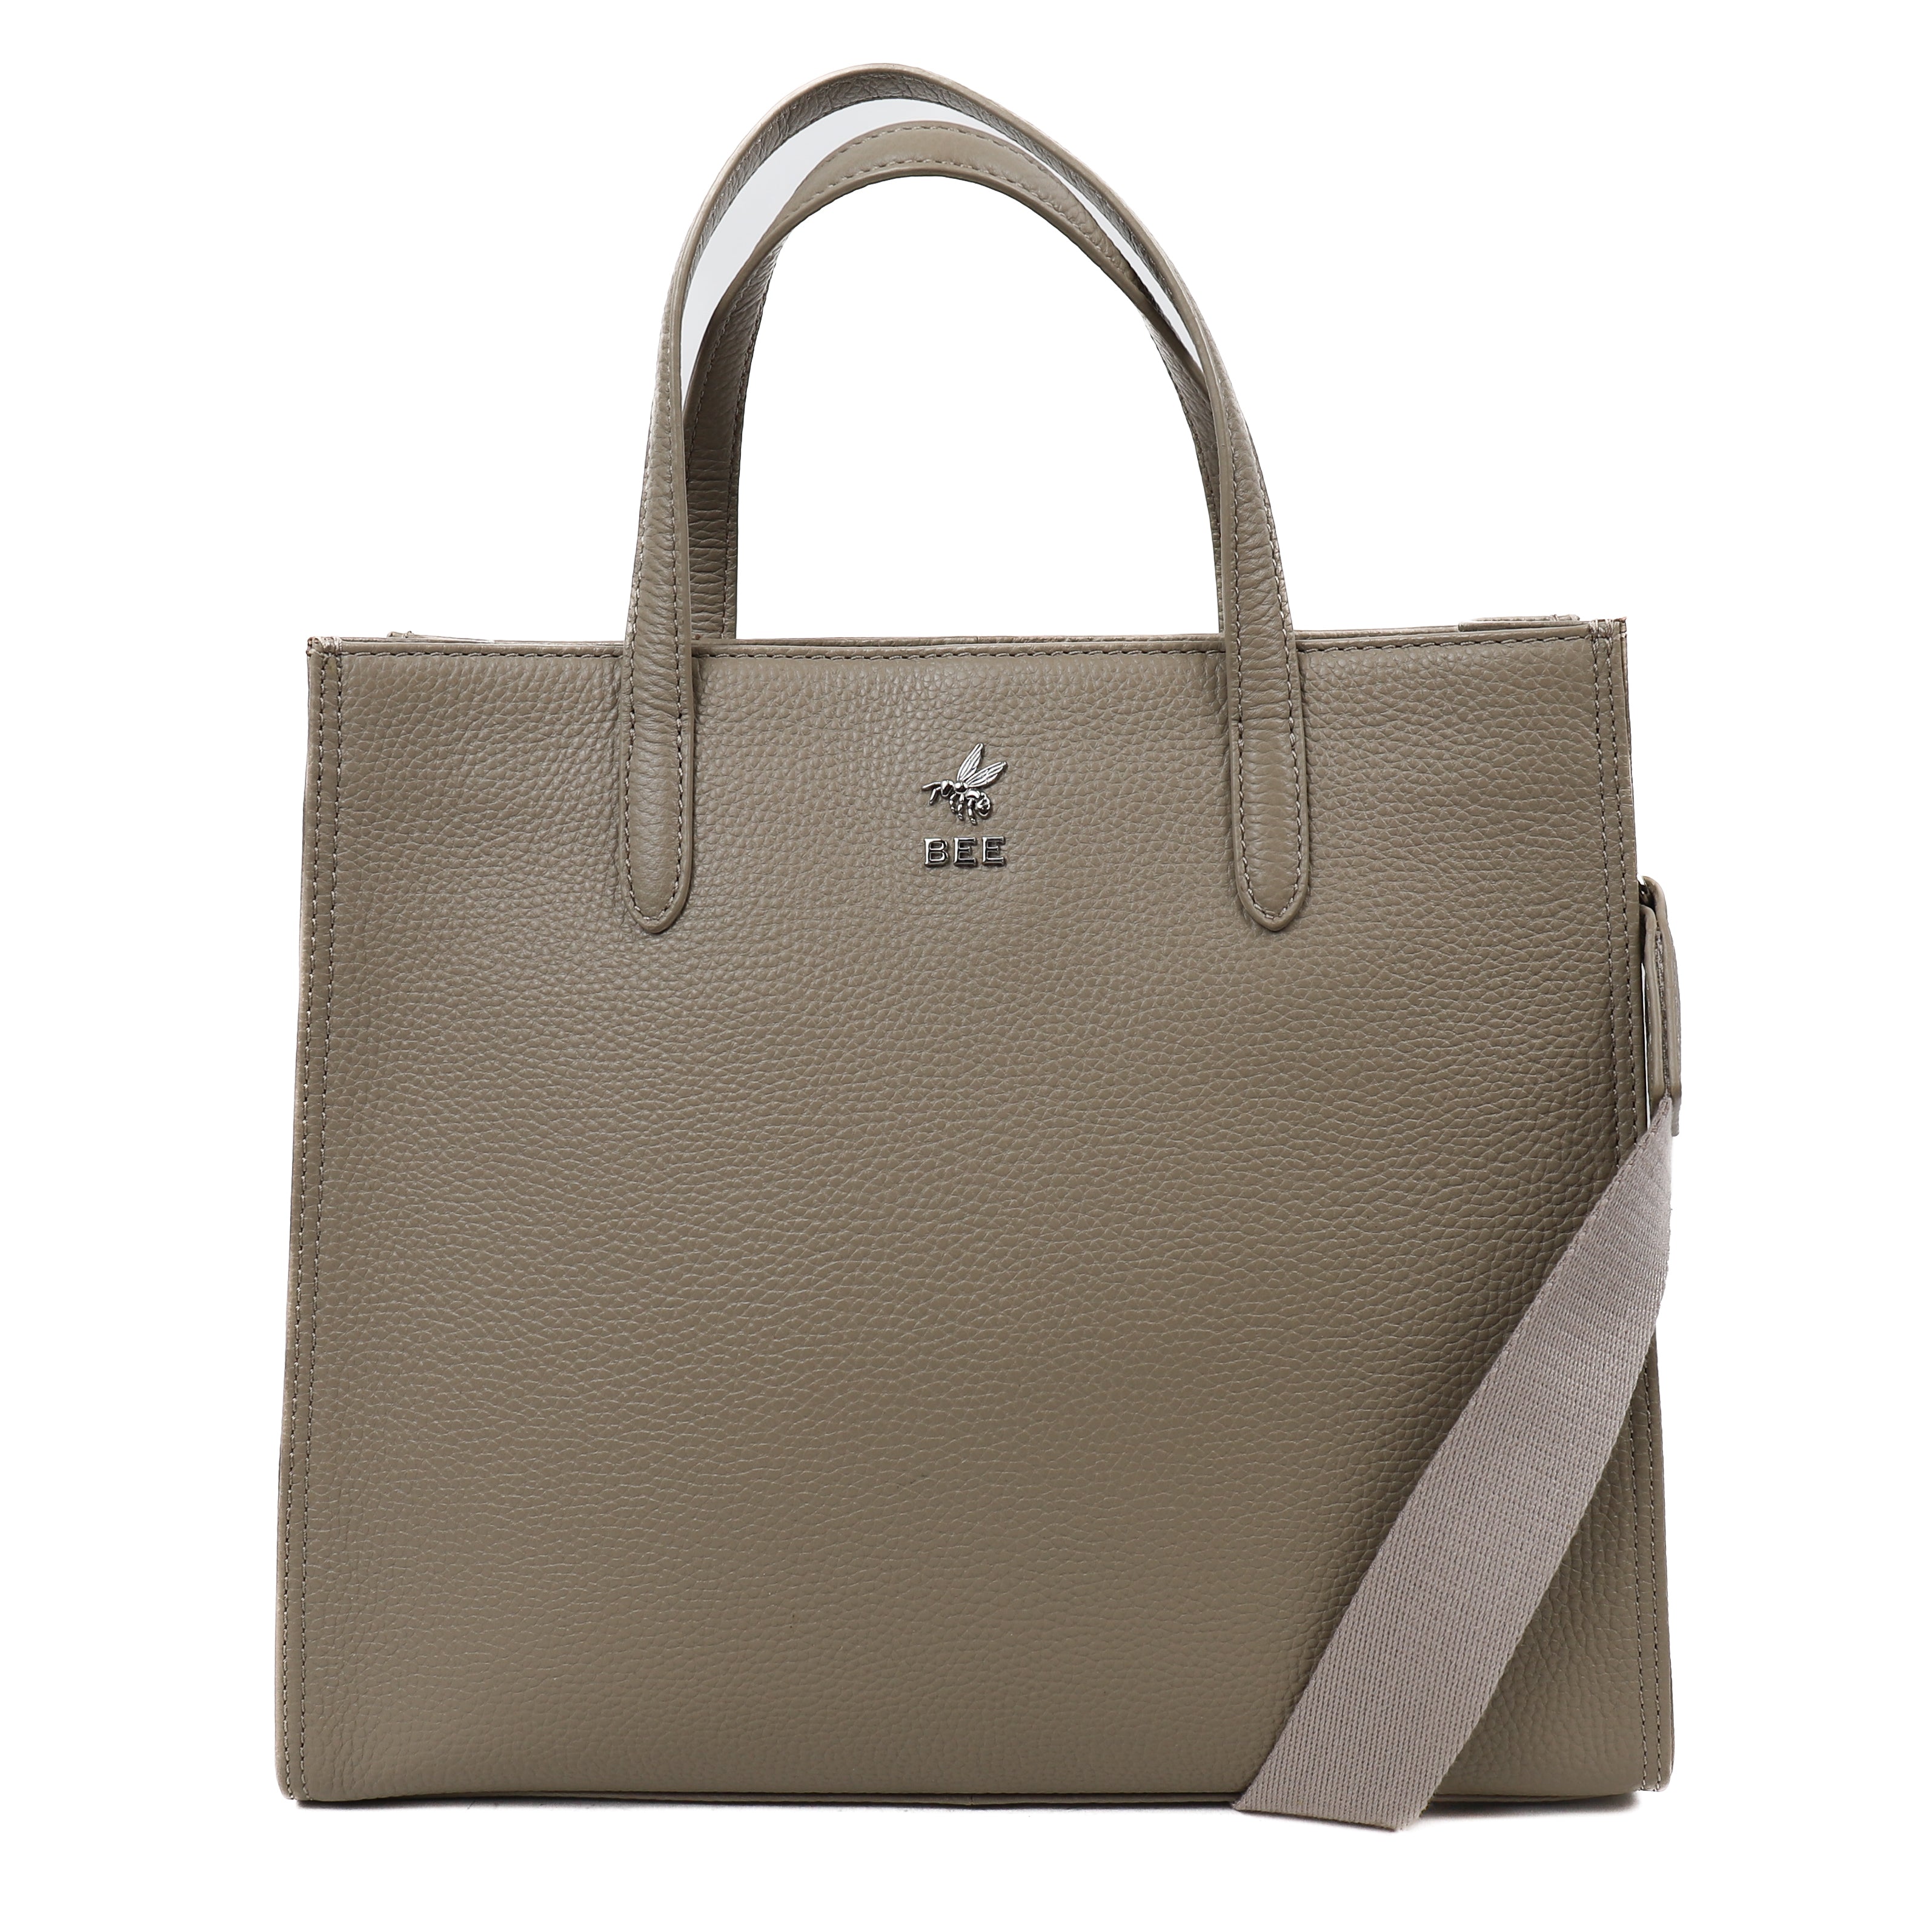 iHELIA Handtaschenhaken für Tisch (Unterschrift) – Premium Taschenhalter  w/90, 180 Grad drehbare Funktion Design (Silber) : : Fashion